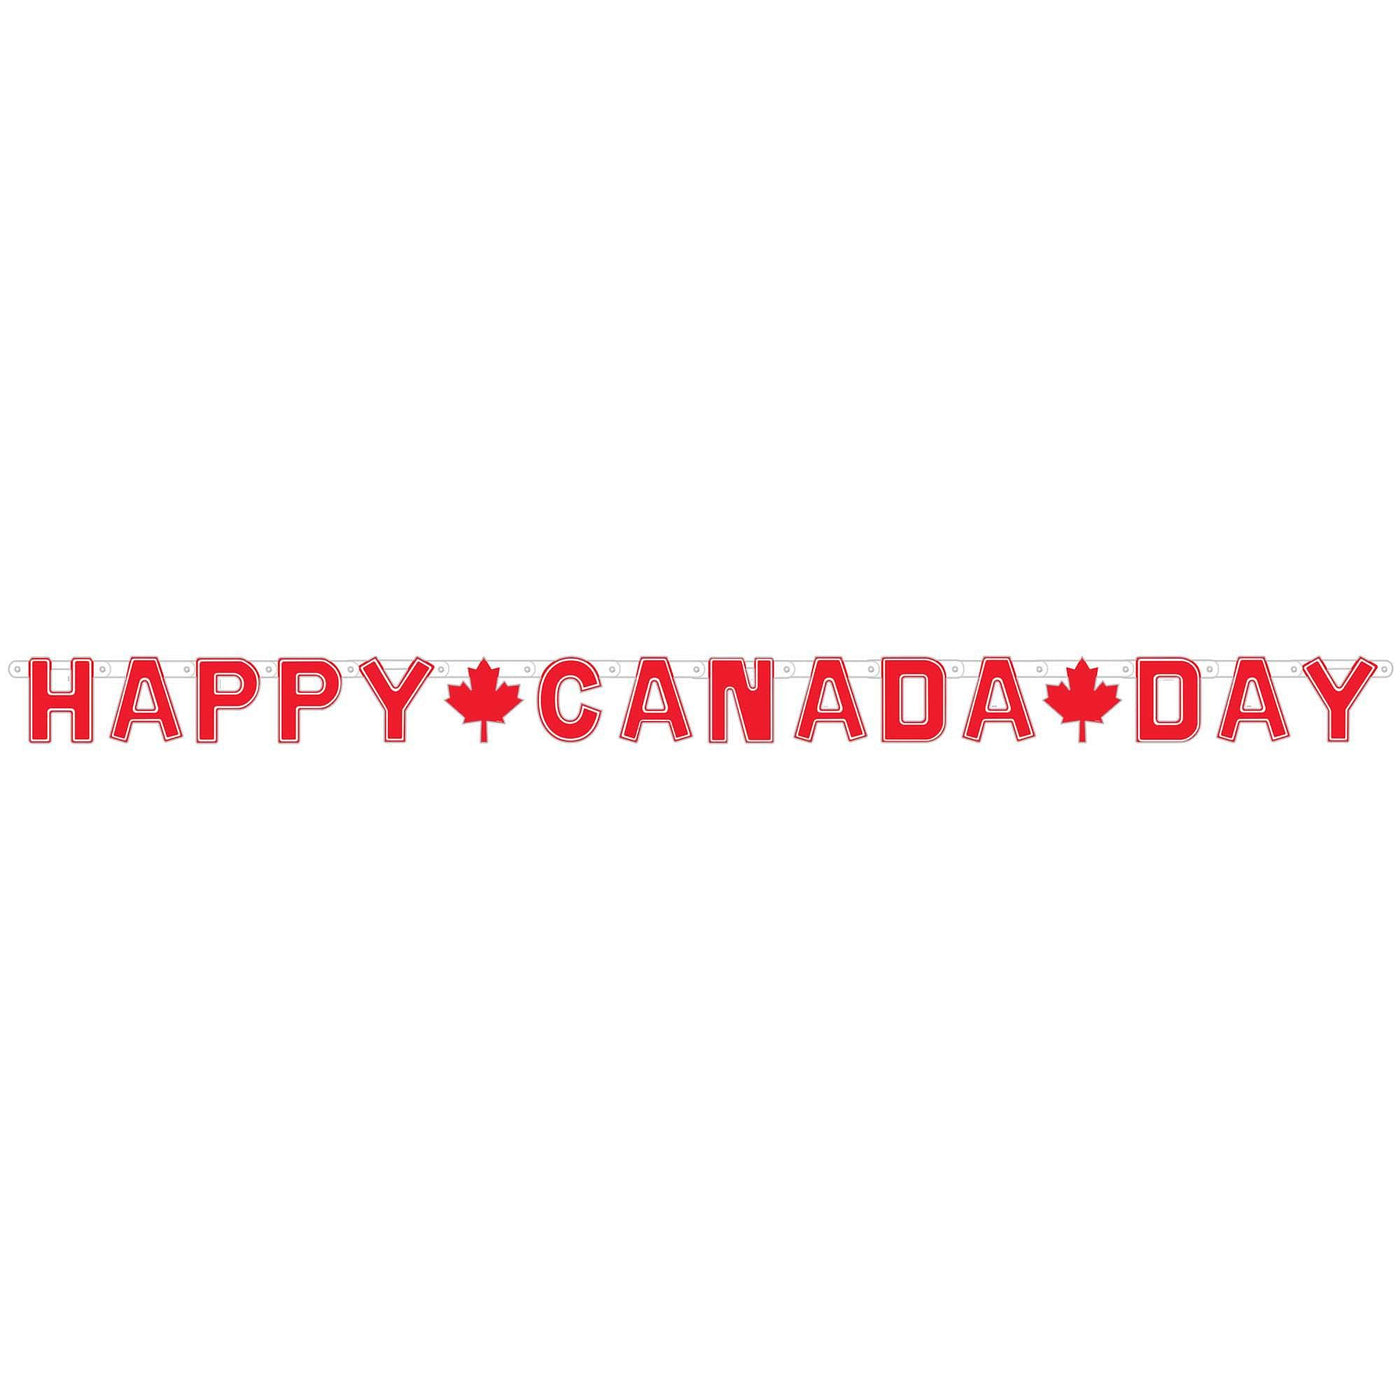 Bannière de lettres pour la fête du Canada